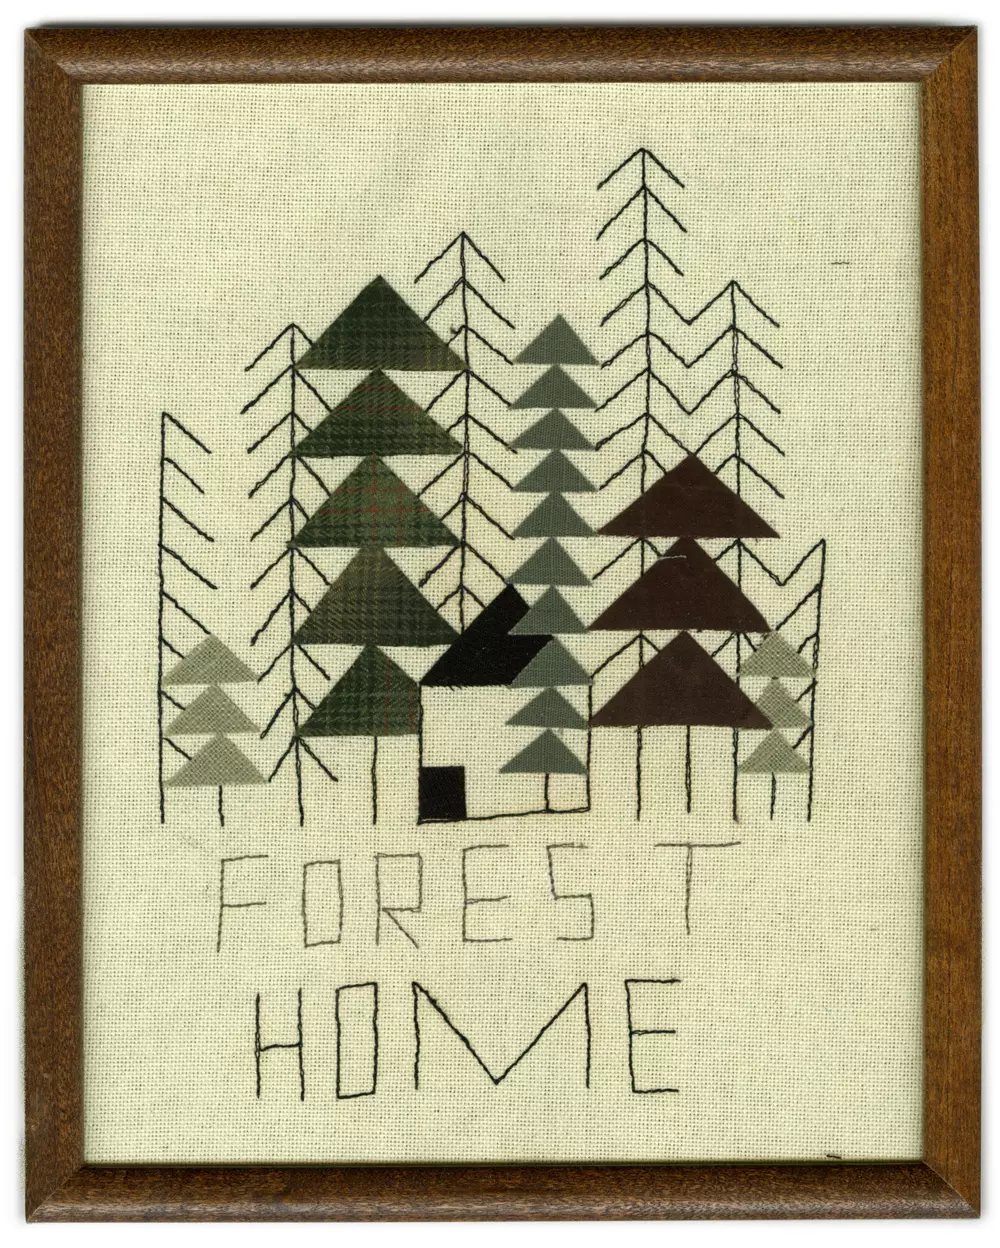 Forest Home, Jon Klassen and Mrs. Karen Klassen